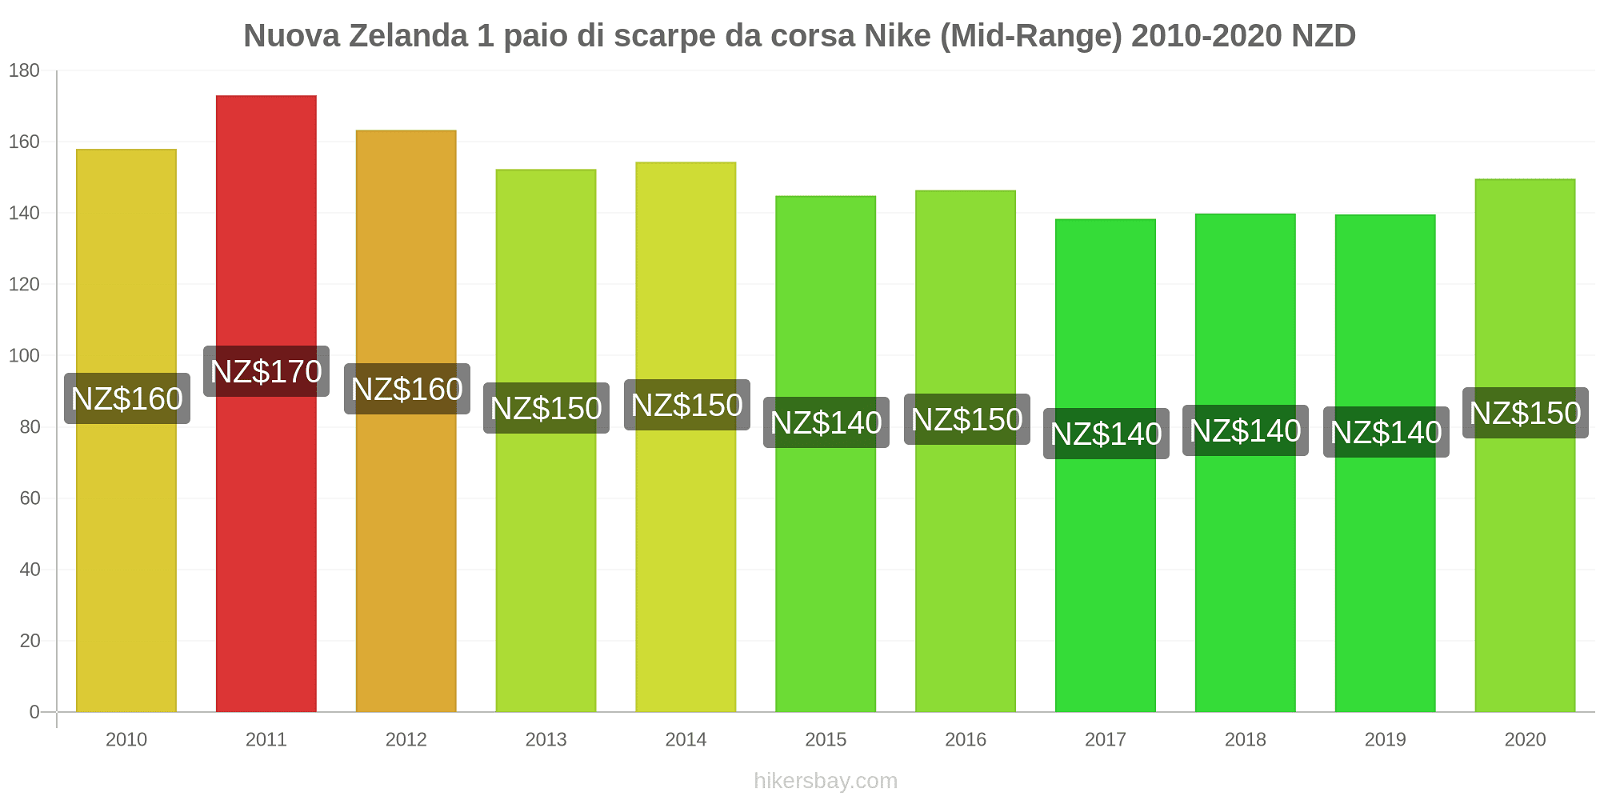 Nuova Zelanda variazioni di prezzo 1 paio di scarpe da corsa Nike (simile) hikersbay.com